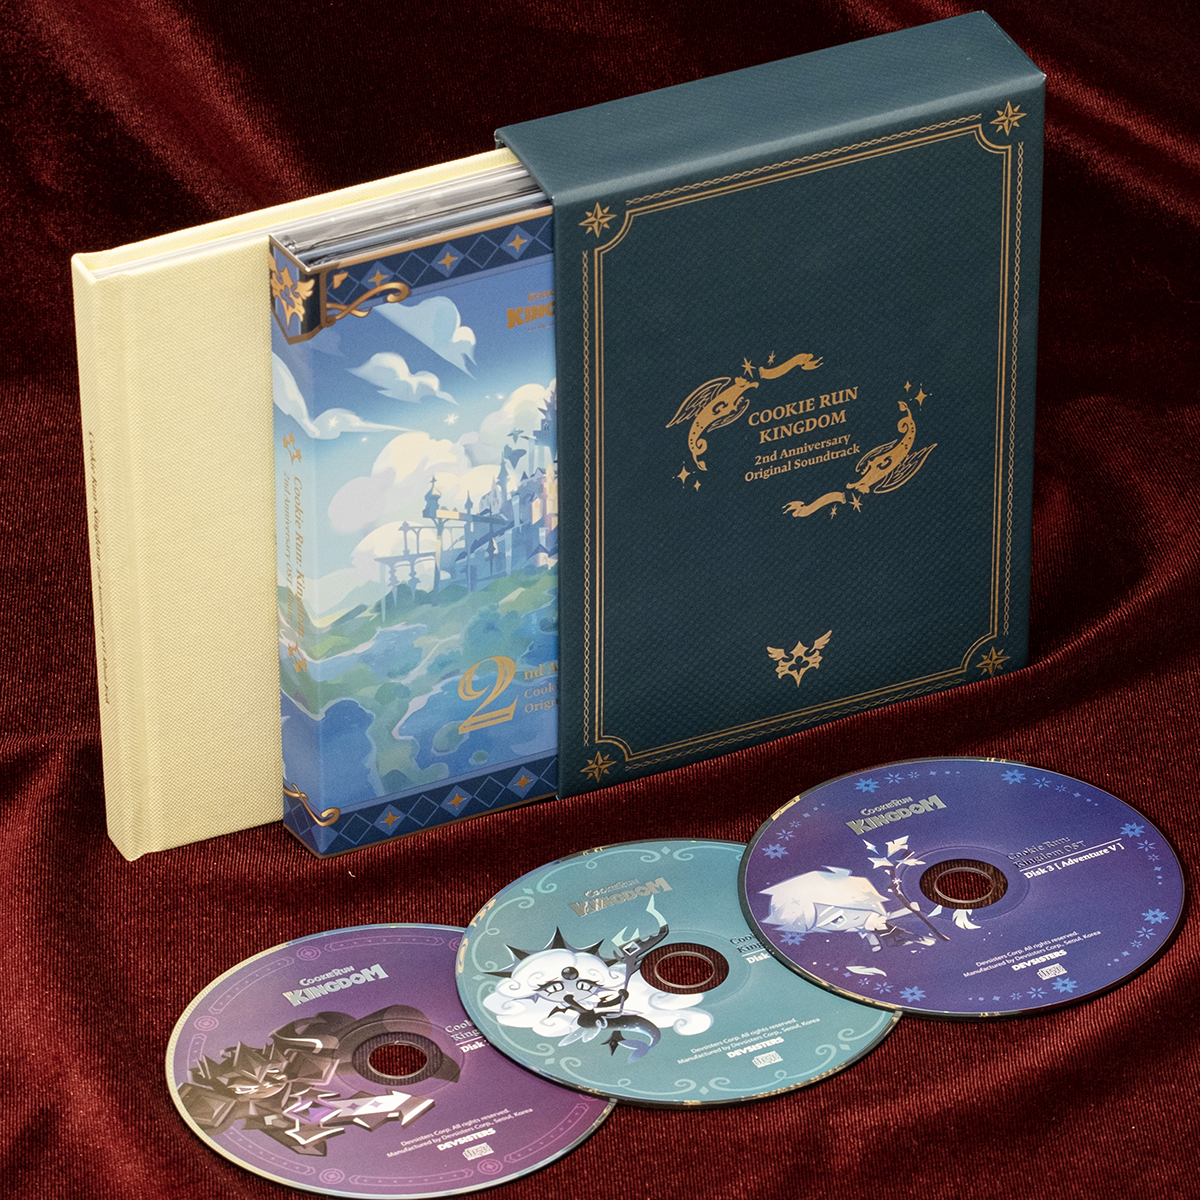 CookieRun: Kingdom 2nd Anniversary OST Album